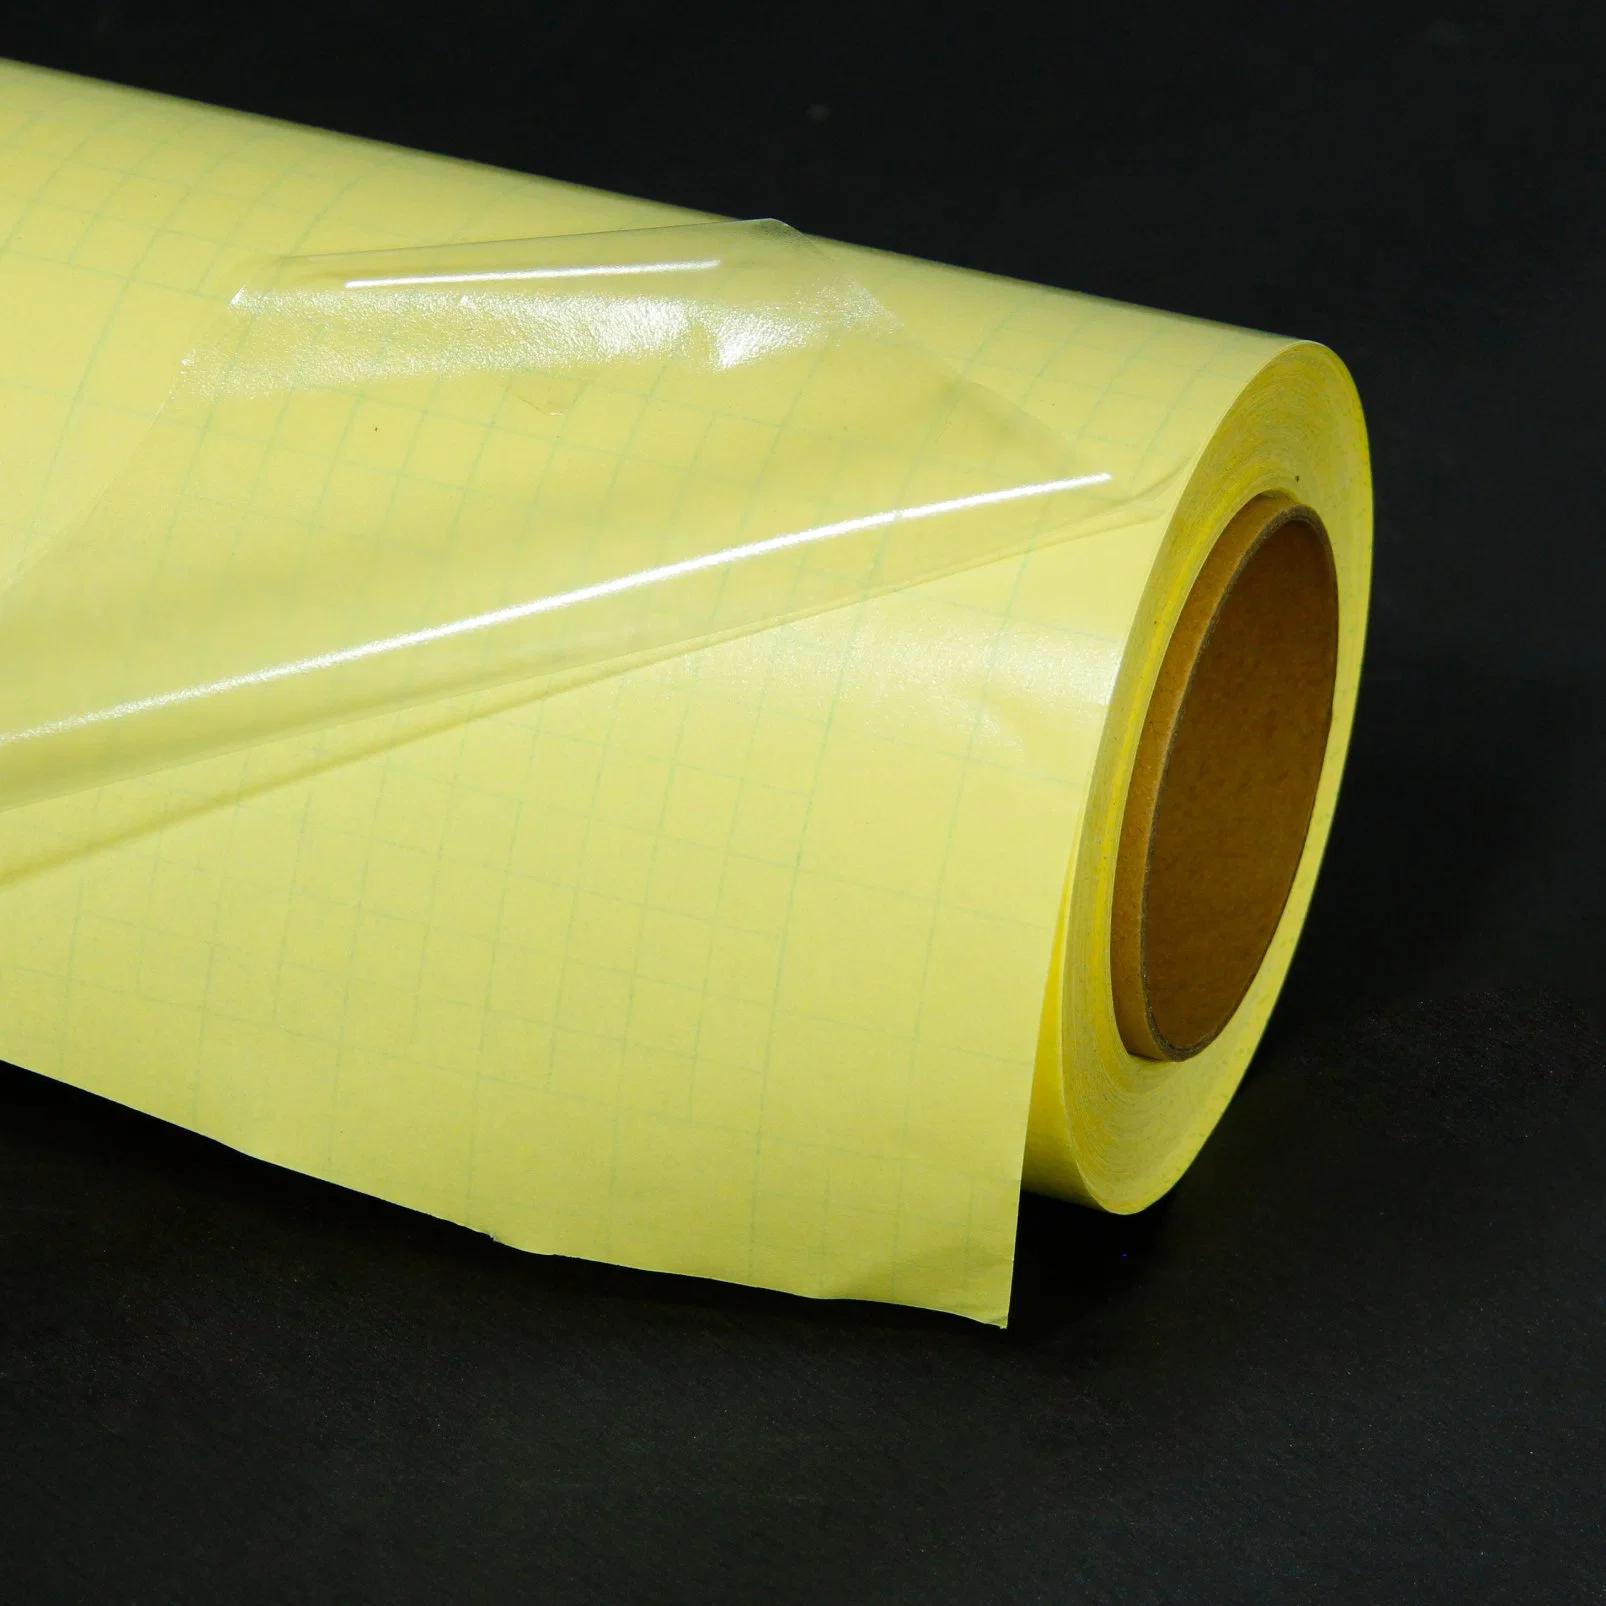 Película de plastificação versátil adesivo permanente, superfície brilhante ou mate, protege e melhora as impressões